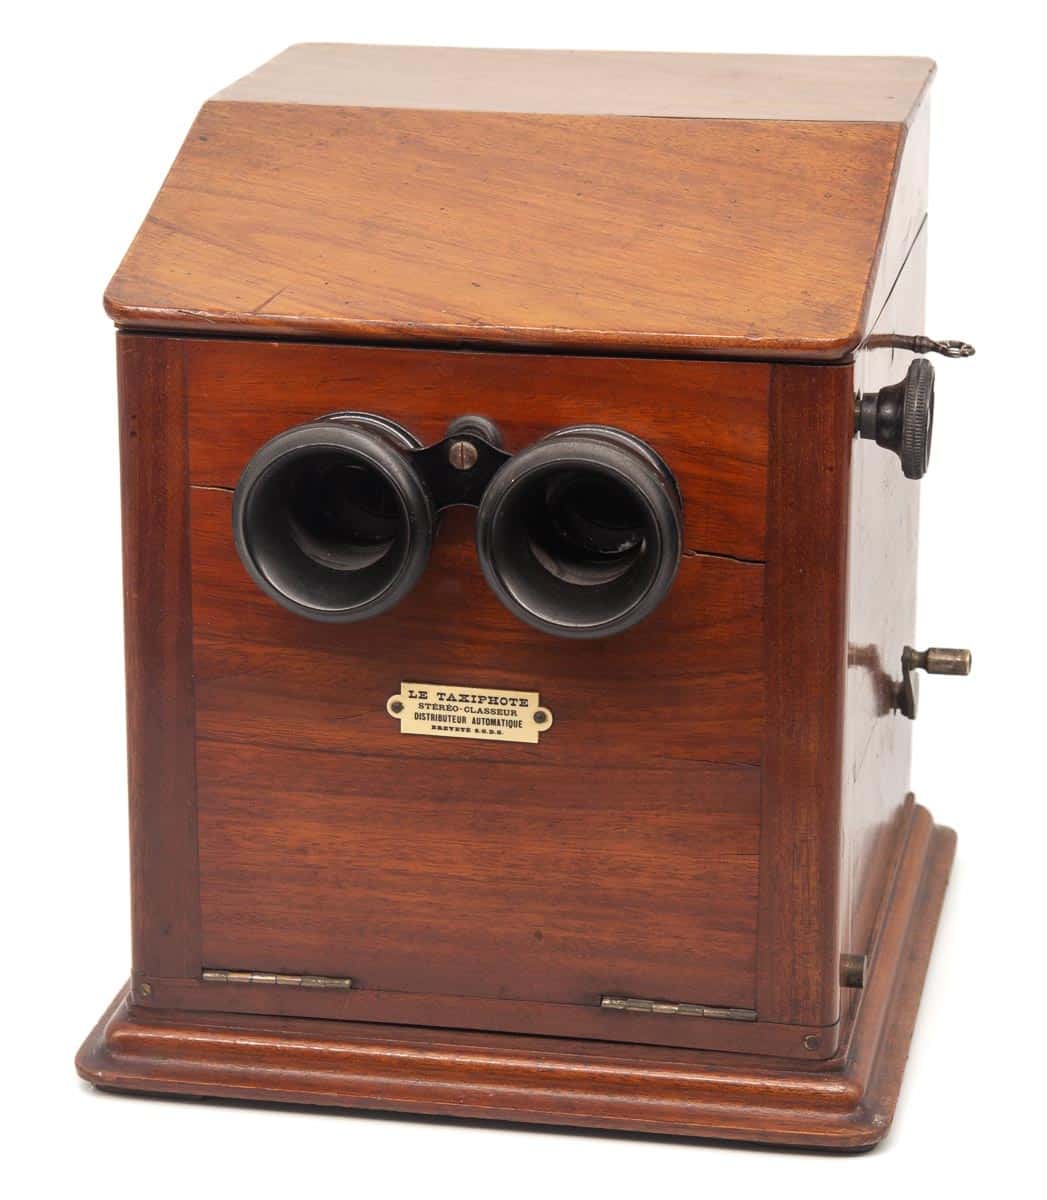 Taxiphote Simplifié Modèle 1908 stereoscope - Jules Richard